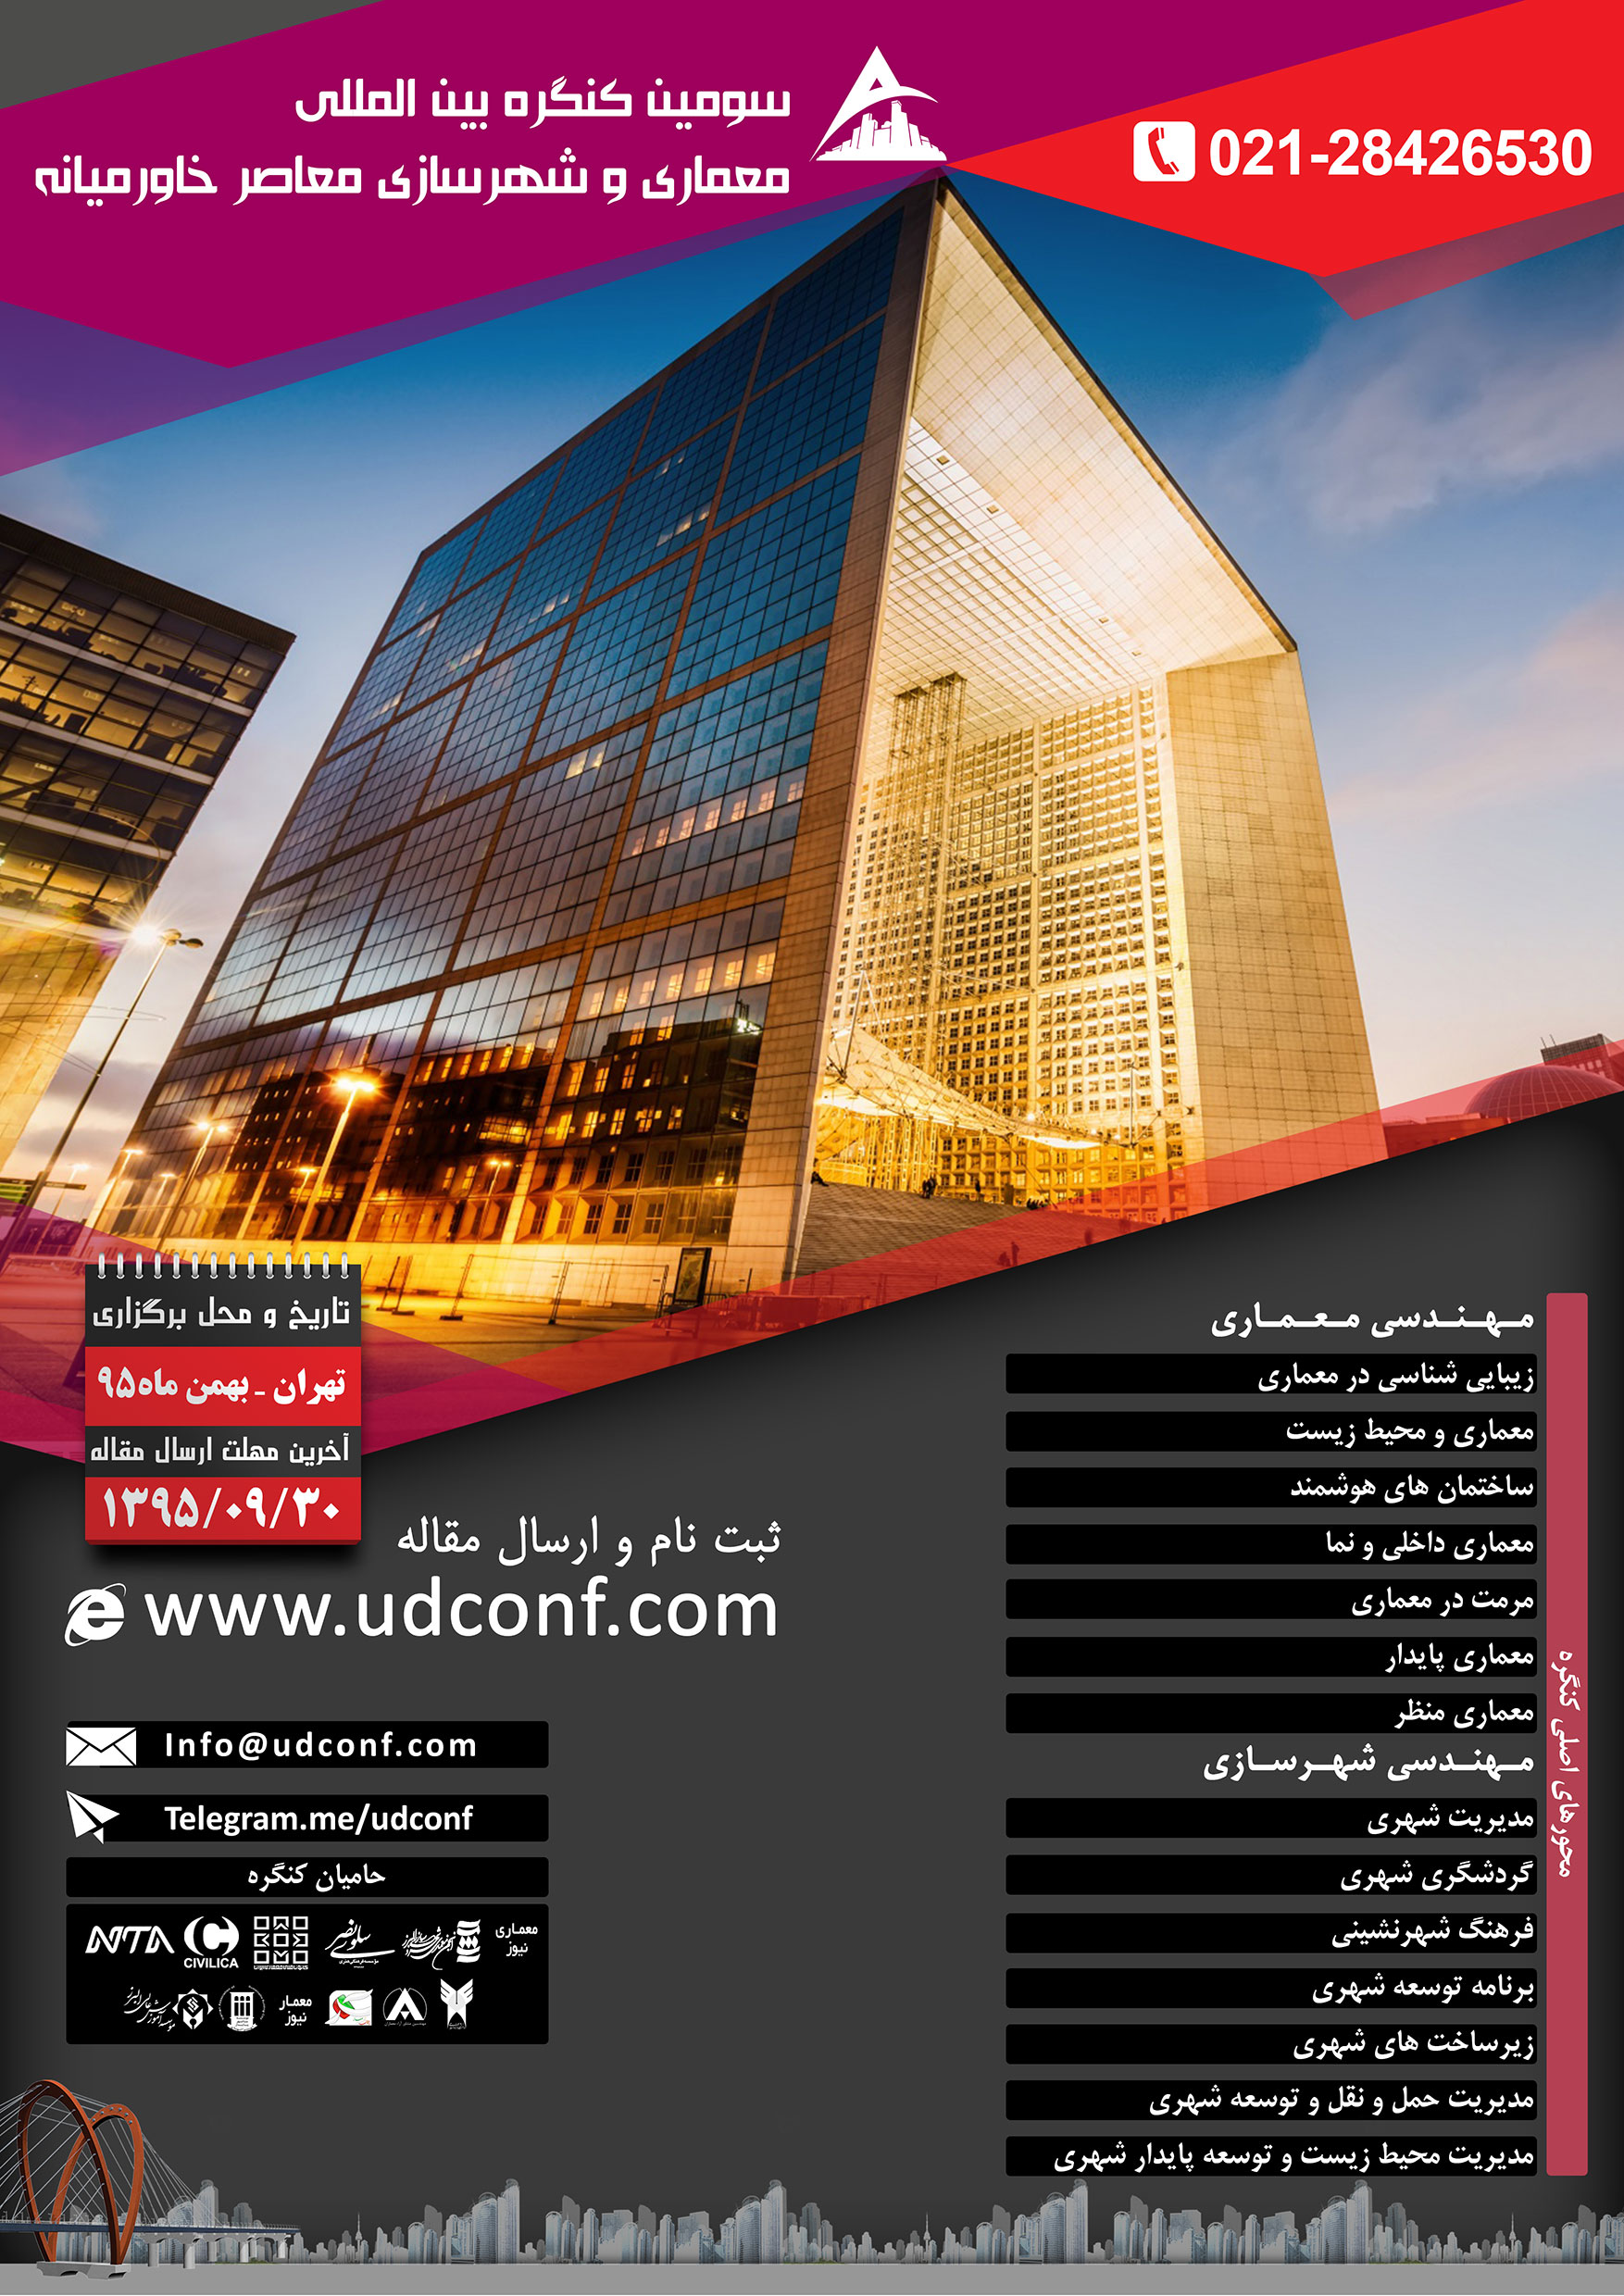 کنگره بین المللی معماری و شهرسازی معاصر خاورمیانه